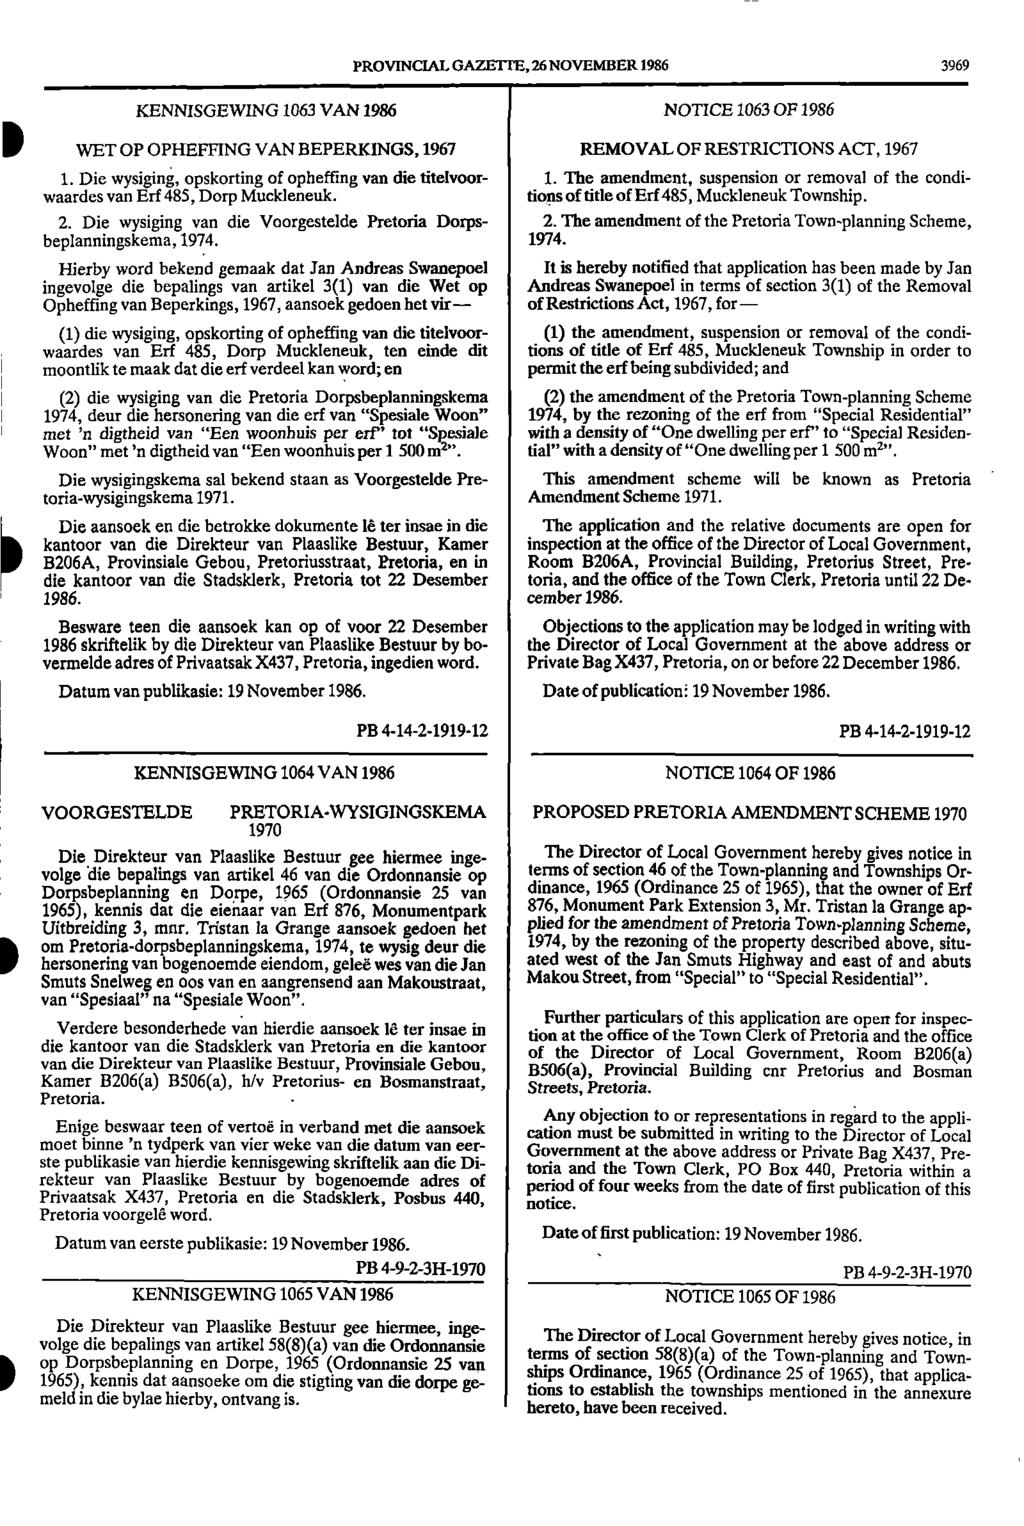 PROVINCIAL GAZETTE, 26 NOVEMBER 1986 3969 KENNISGEWING 1063 VAN 1986 NOTICE 1063 OF 1986 IIWET OP OPHEFFING VAN BEPERKINGS, 1967 REMOVAL OF RESTRICTIONS ACT, 1967 1.